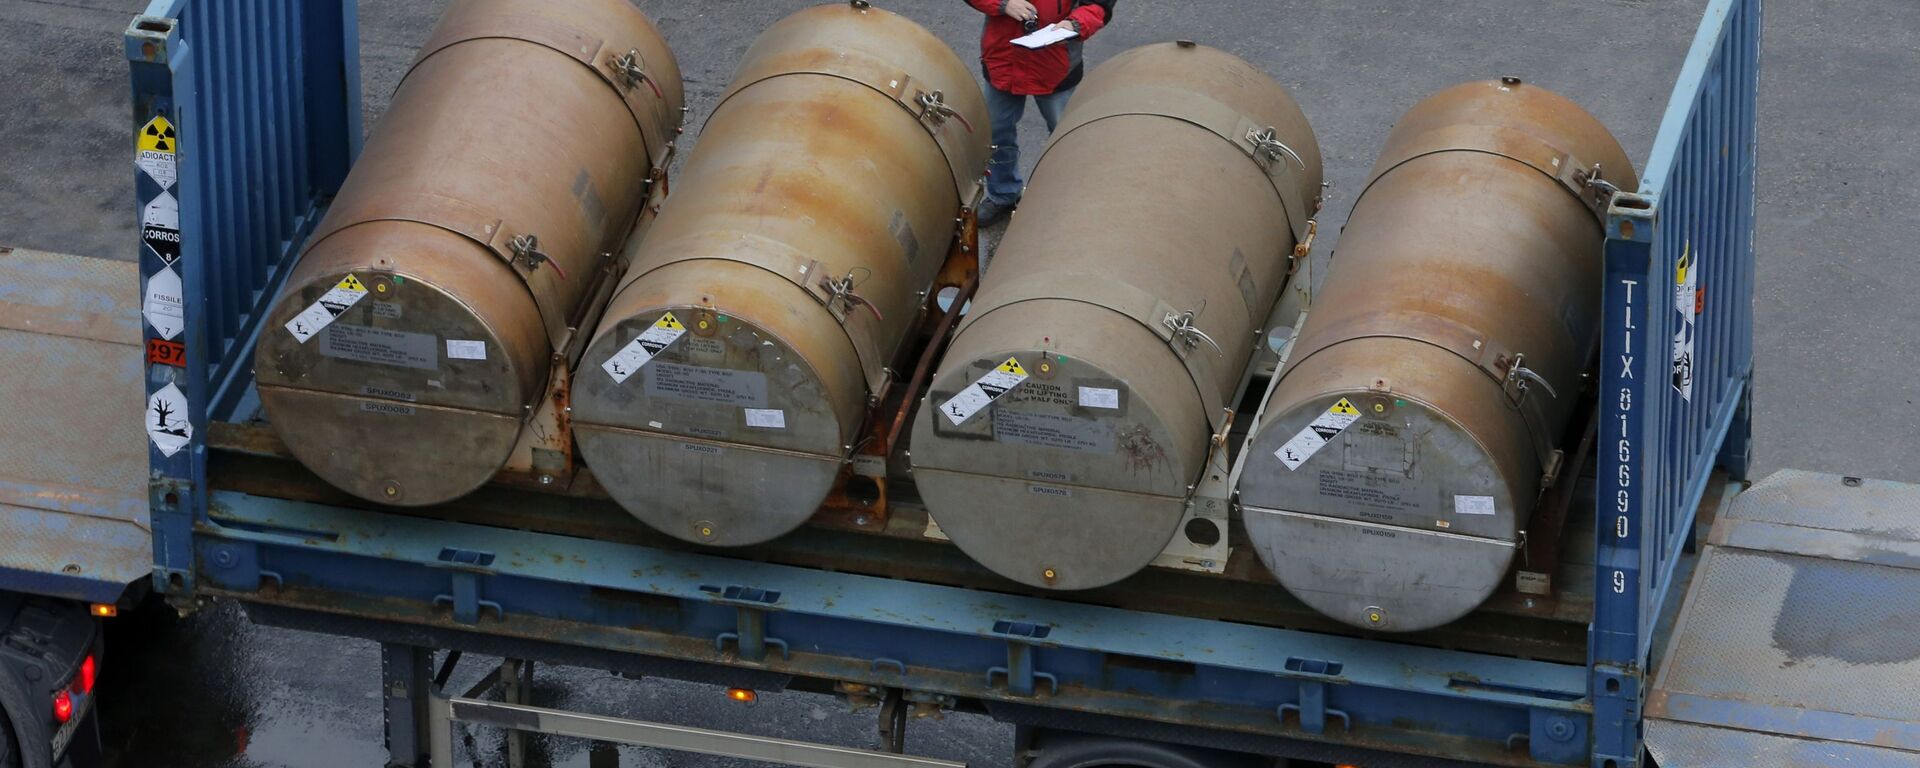 Контейнеры с низкообогащенным ураном для использования в качестве топлива для ядерных реакторов в порту в Санкт-Петербурге - Sputnik Ўзбекистон, 1920, 29.04.2020